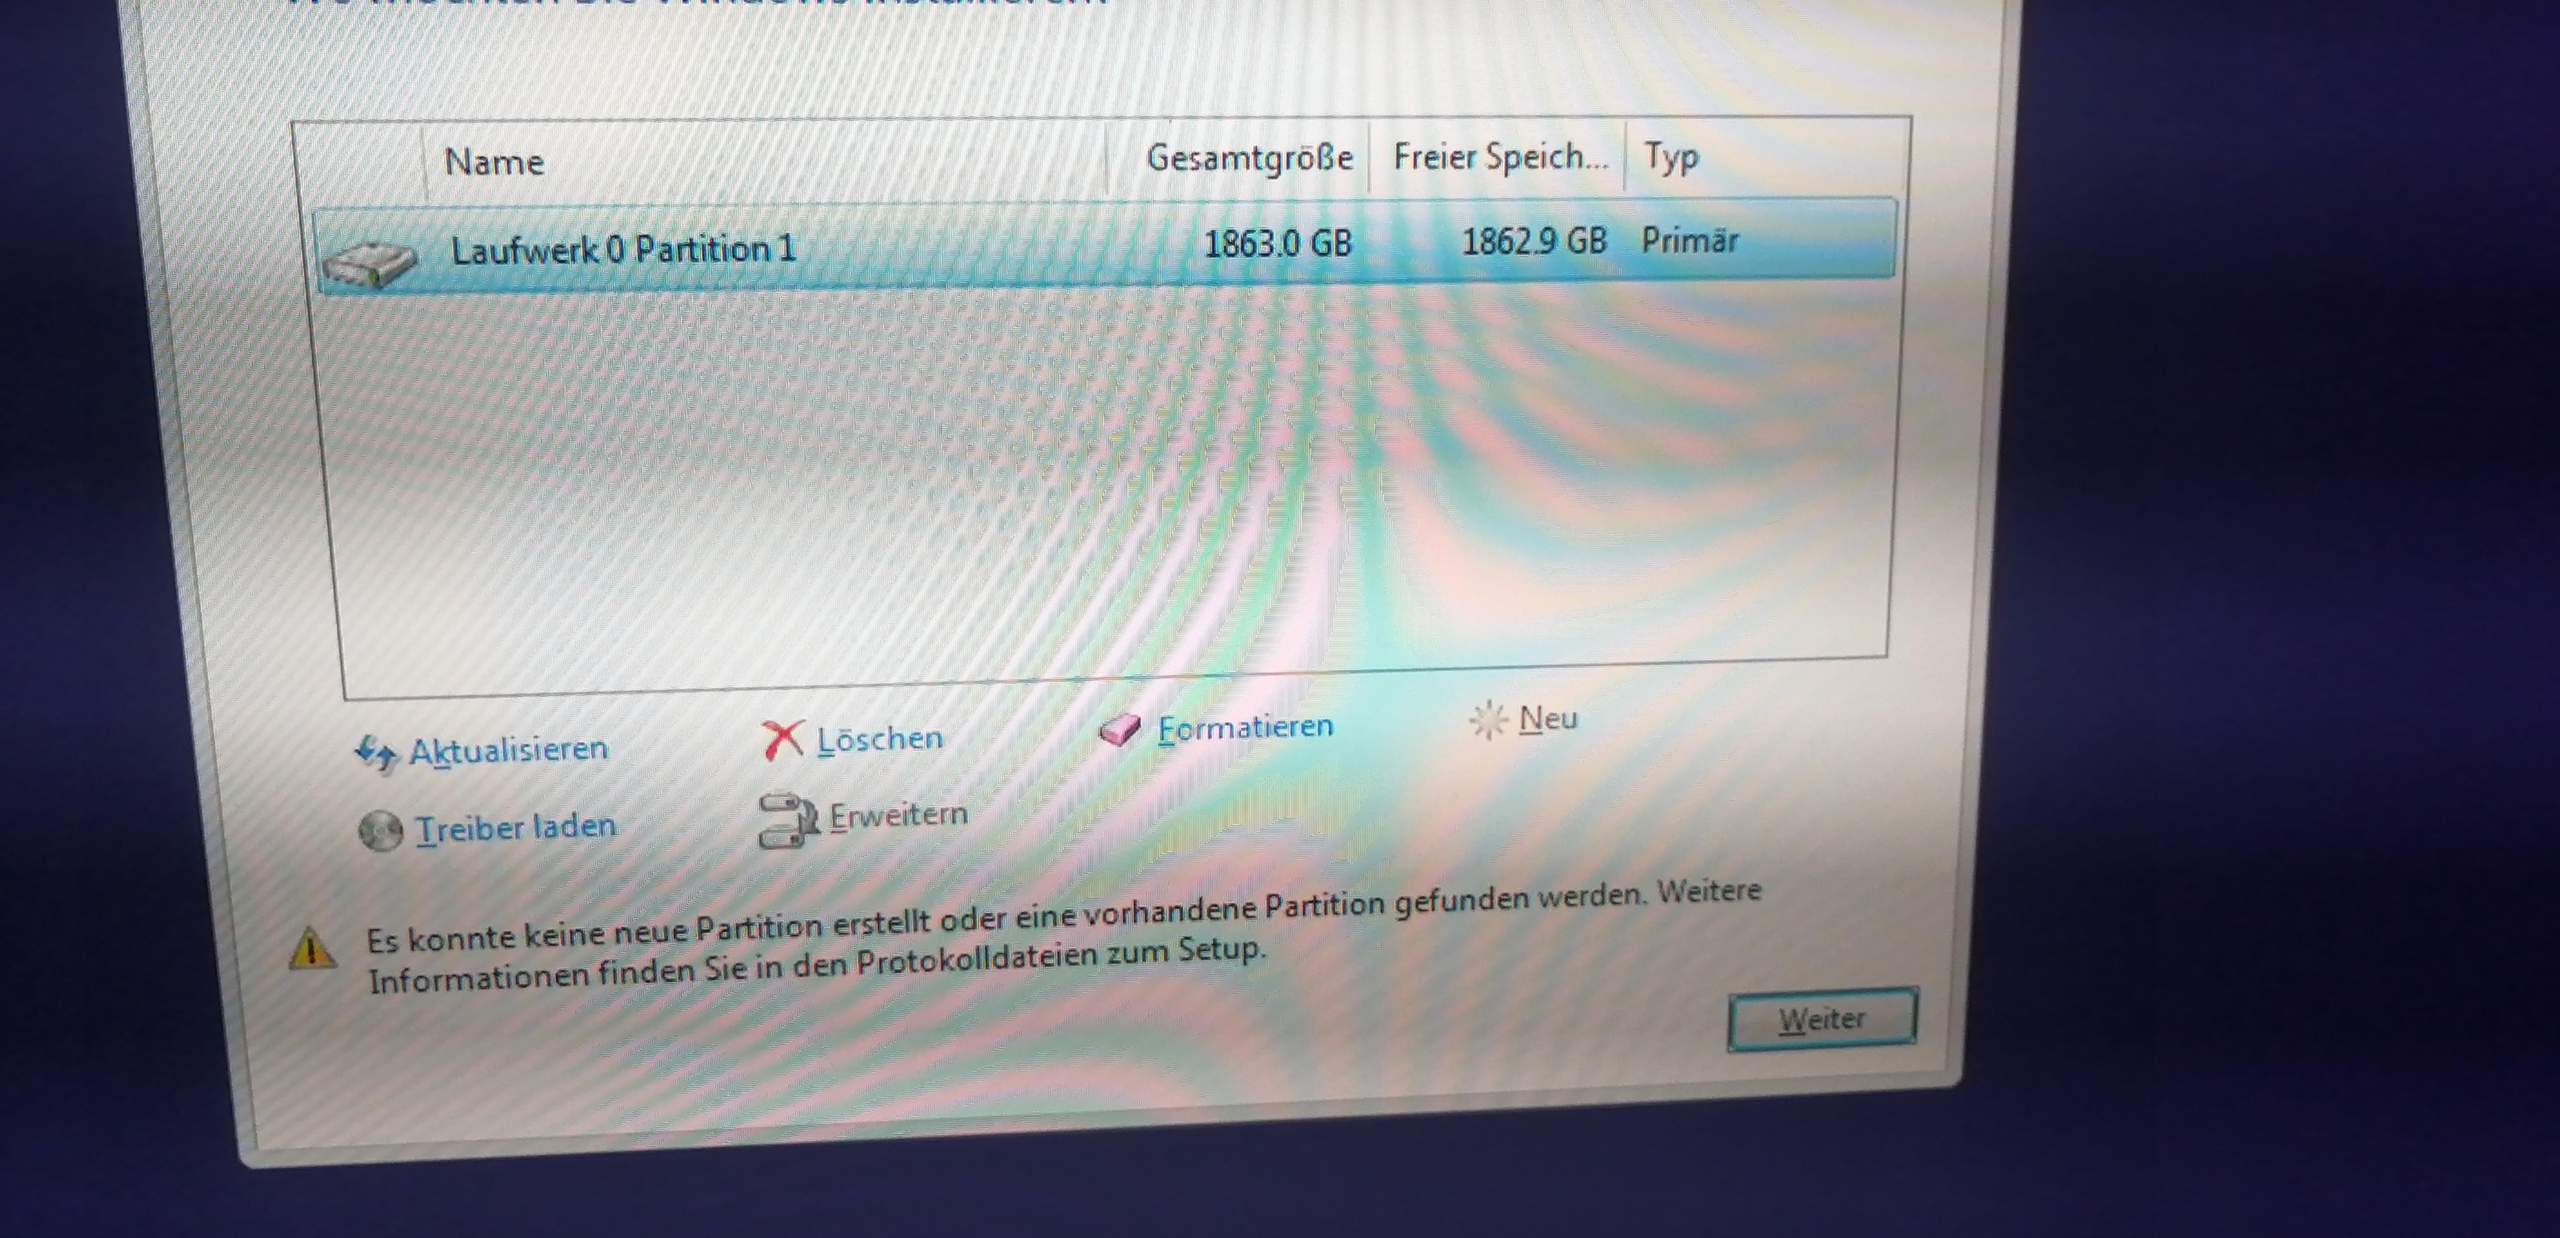 Windows kann auf dem Datenträger nicht installiert werden? Hier sind die  Lösungen! - MiniTool